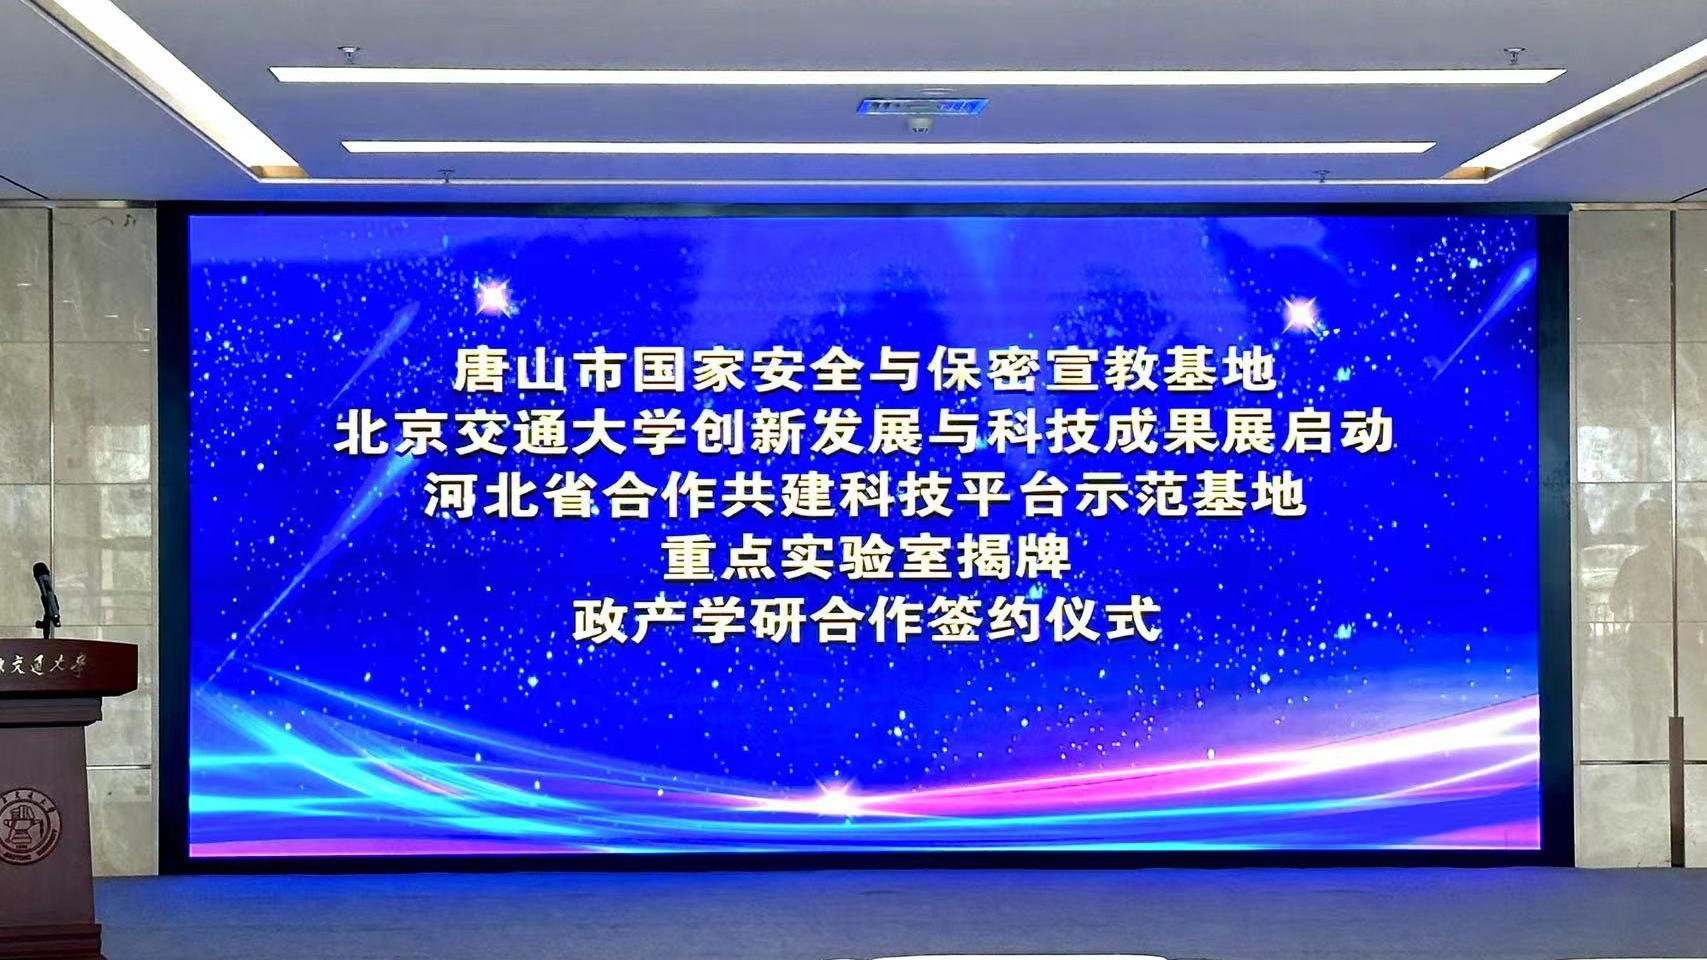 奇安信科技集团出席唐山市国家安全与保密宣教基地启用暨北京交通大学产学研合作签约活动